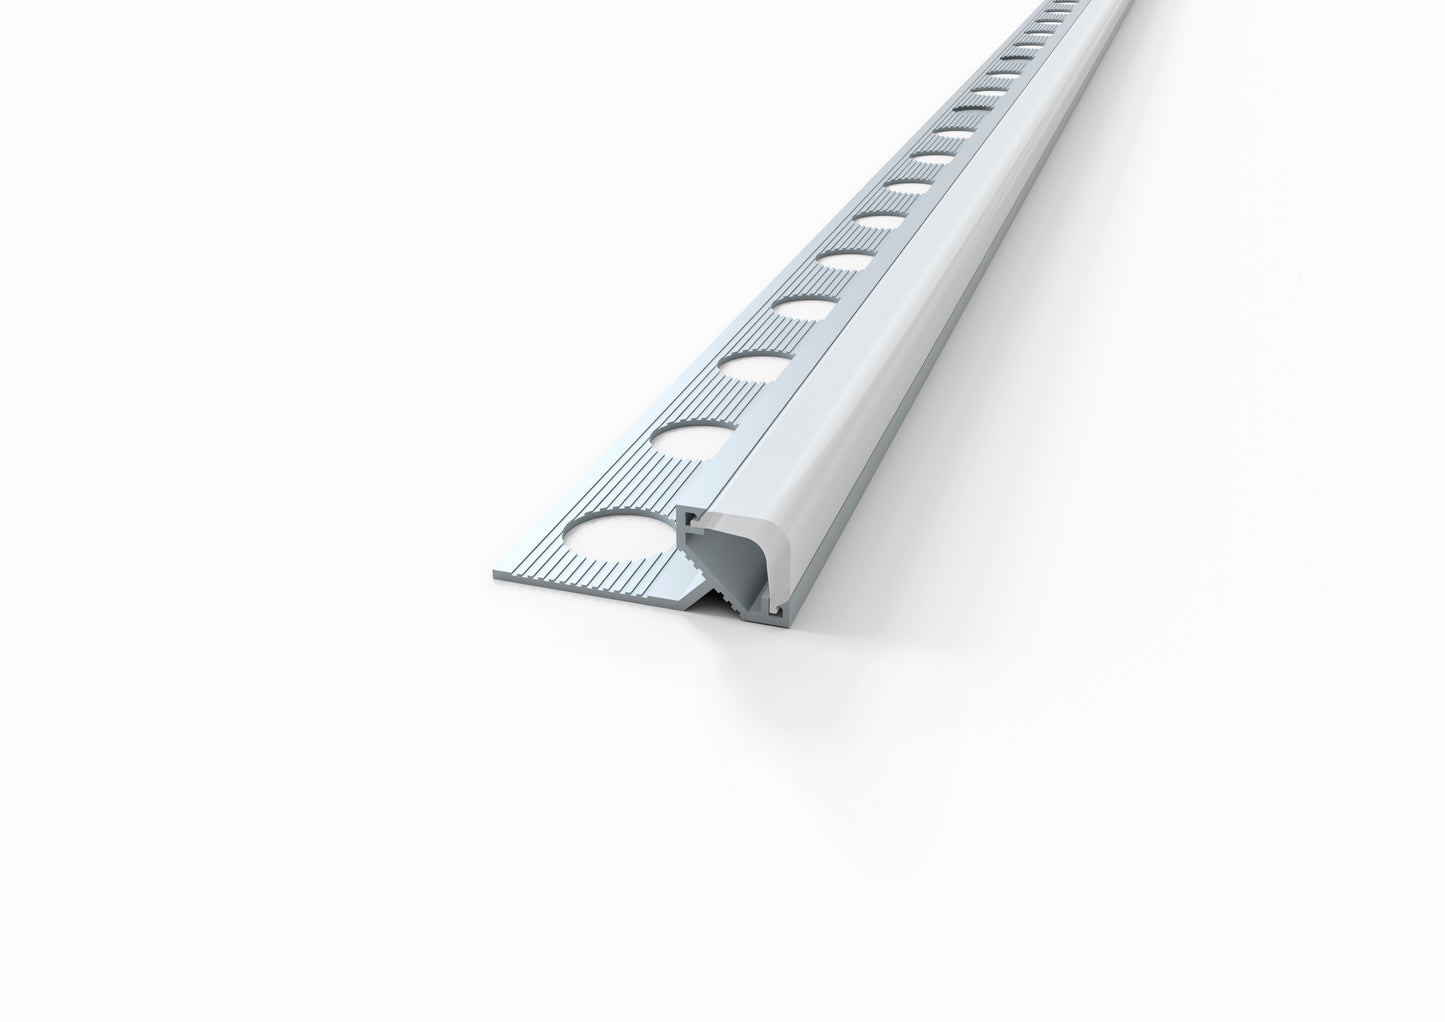 Profili in alluminio per strisce LED - SU MISURA